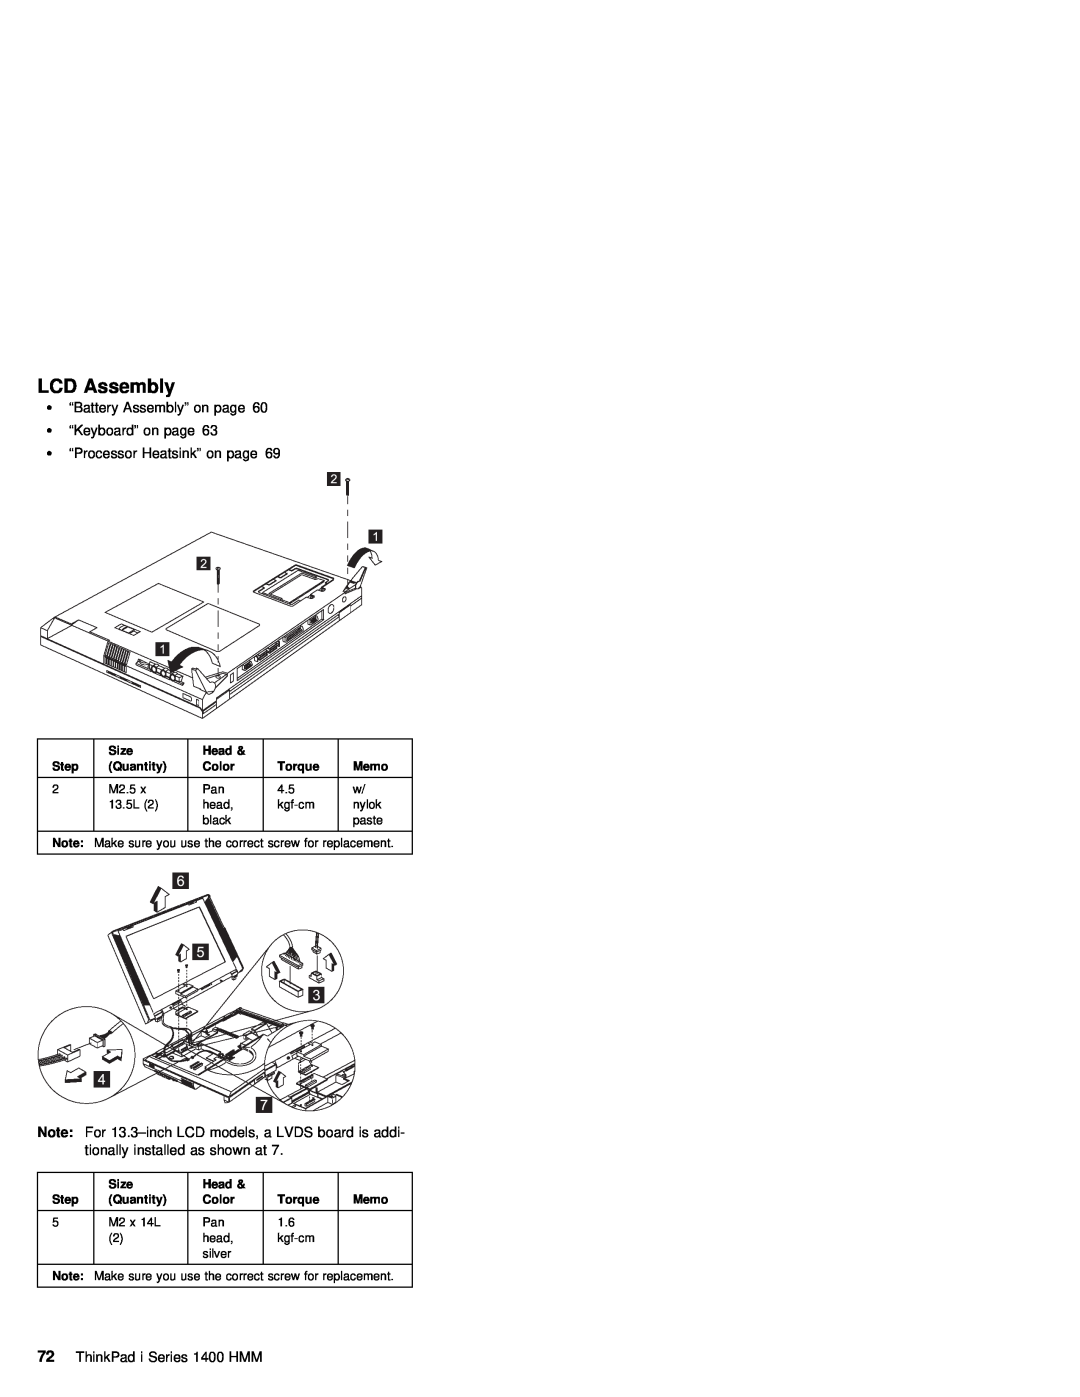 IBM 1400 (2611) LCD Assembly, Ÿ “Battery Assembly” on page Ÿ “Keyboard” on page, Ÿ “Processor Heatsink” on page, tionally 